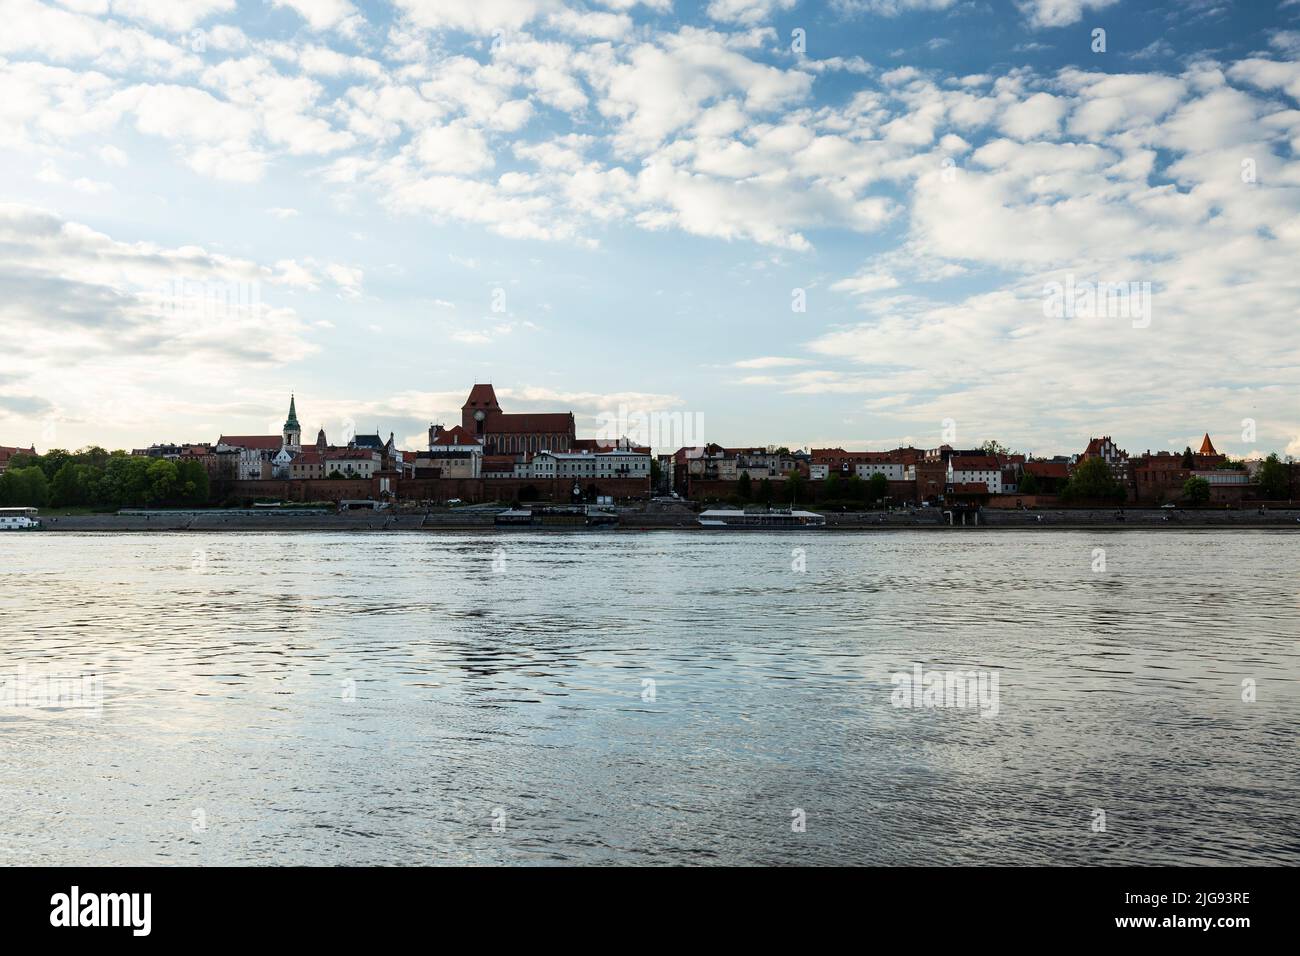 Europe, Poland, Kuyavian-Pomeranian Voivodeship, Torun / Thorn - Old Town seen from the Vistula Stock Photo